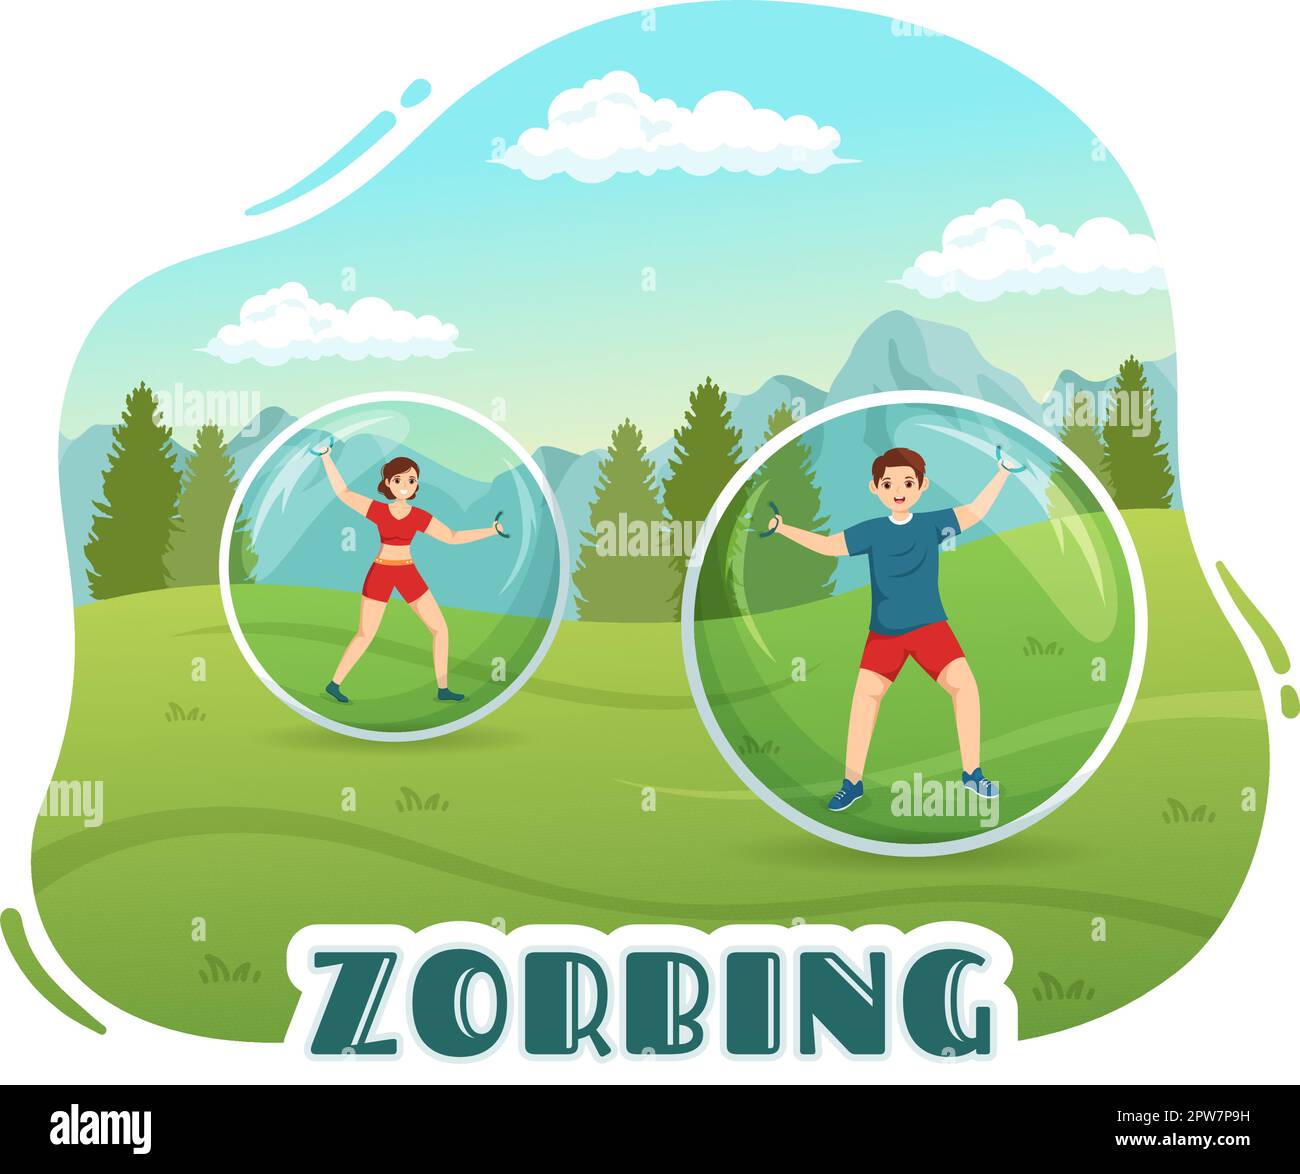 Illustrazione di Zorbing con la gente che gioca Bump di bolla sul campo verde o sul pool per il banner di fotoricettore o la pagina di atterraggio nei modelli disegnati a mano del cartoon piano Illustrazione Vettoriale